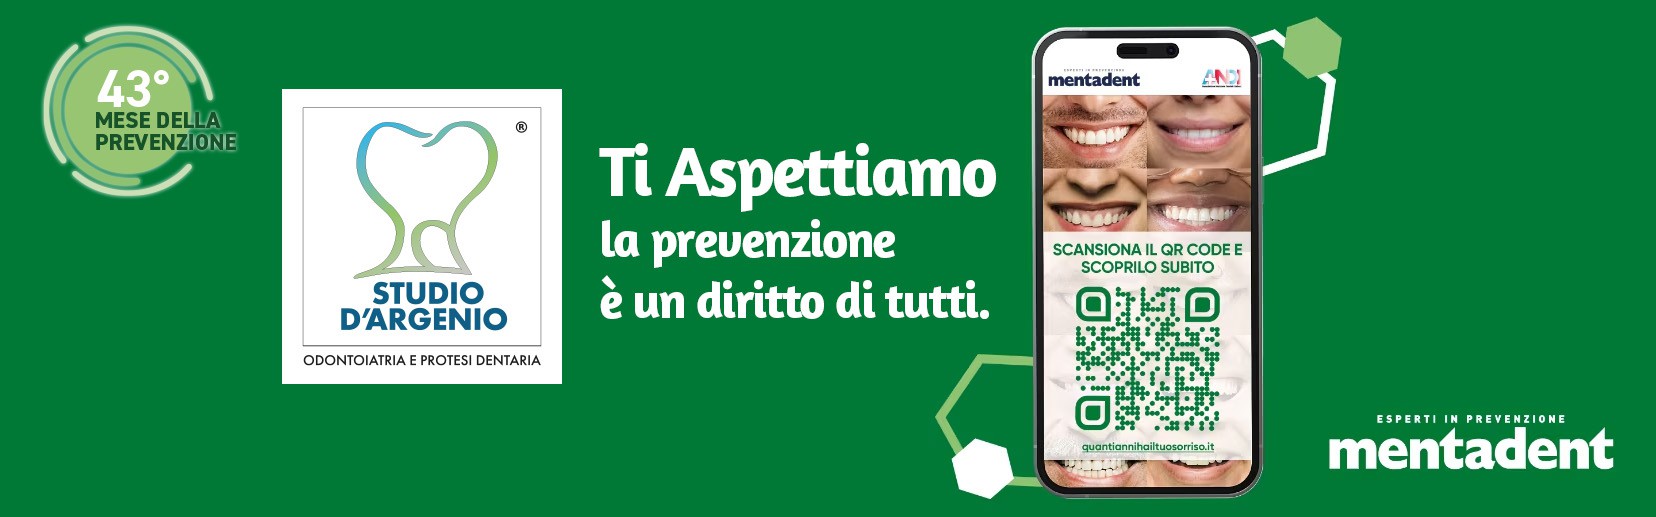 Tutti gli anni lo Studio d'Argenio aderisce all'iniziativa #facciamoprevenzione di Mentadent,  in collaborazione con ANDI (Associazione Nazionale Dentisti Italiani).